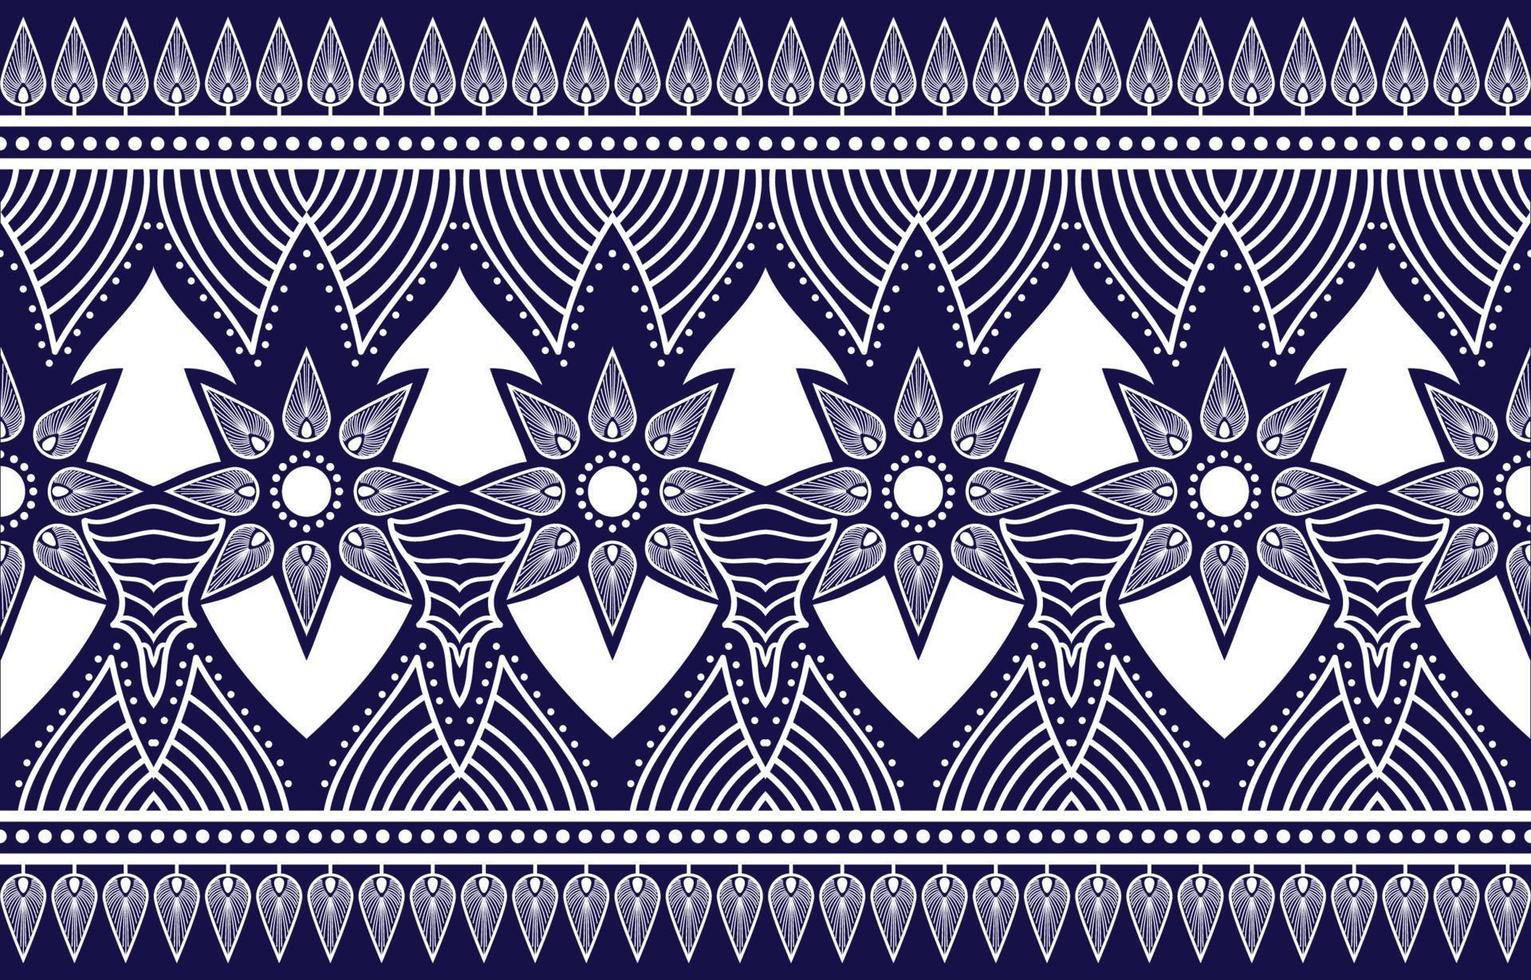 oriental étnico geométrico abstrato decorativo com padrão floral tradicional, design de fundo abstrato para tapete, papel de parede, roupas, embrulho, batik, tecido, vetor de impressão tradicional